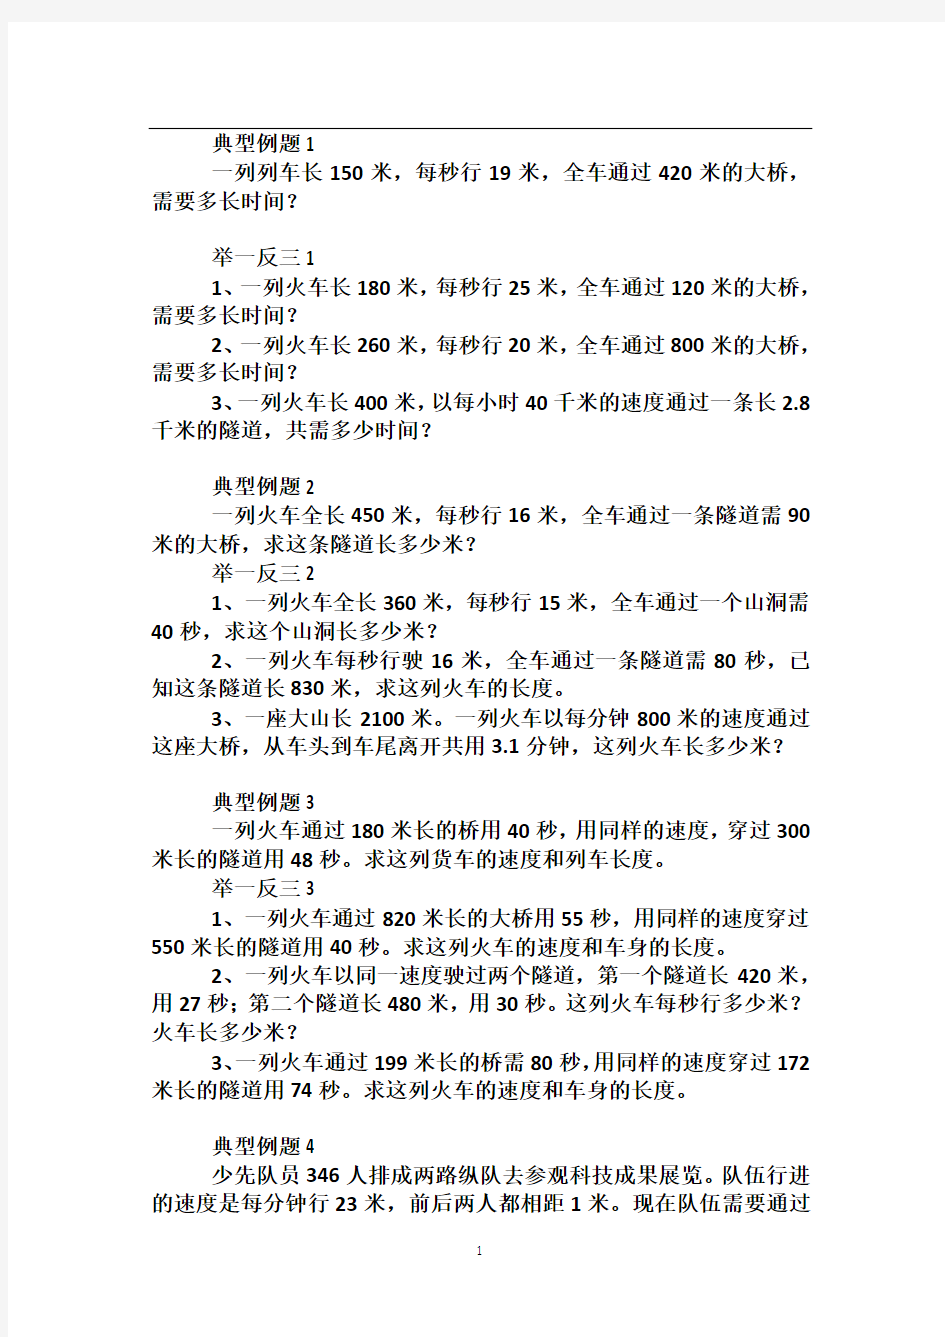 北京华罗庚学校四年级奥数补习教案 第6讲 列车过桥问题1